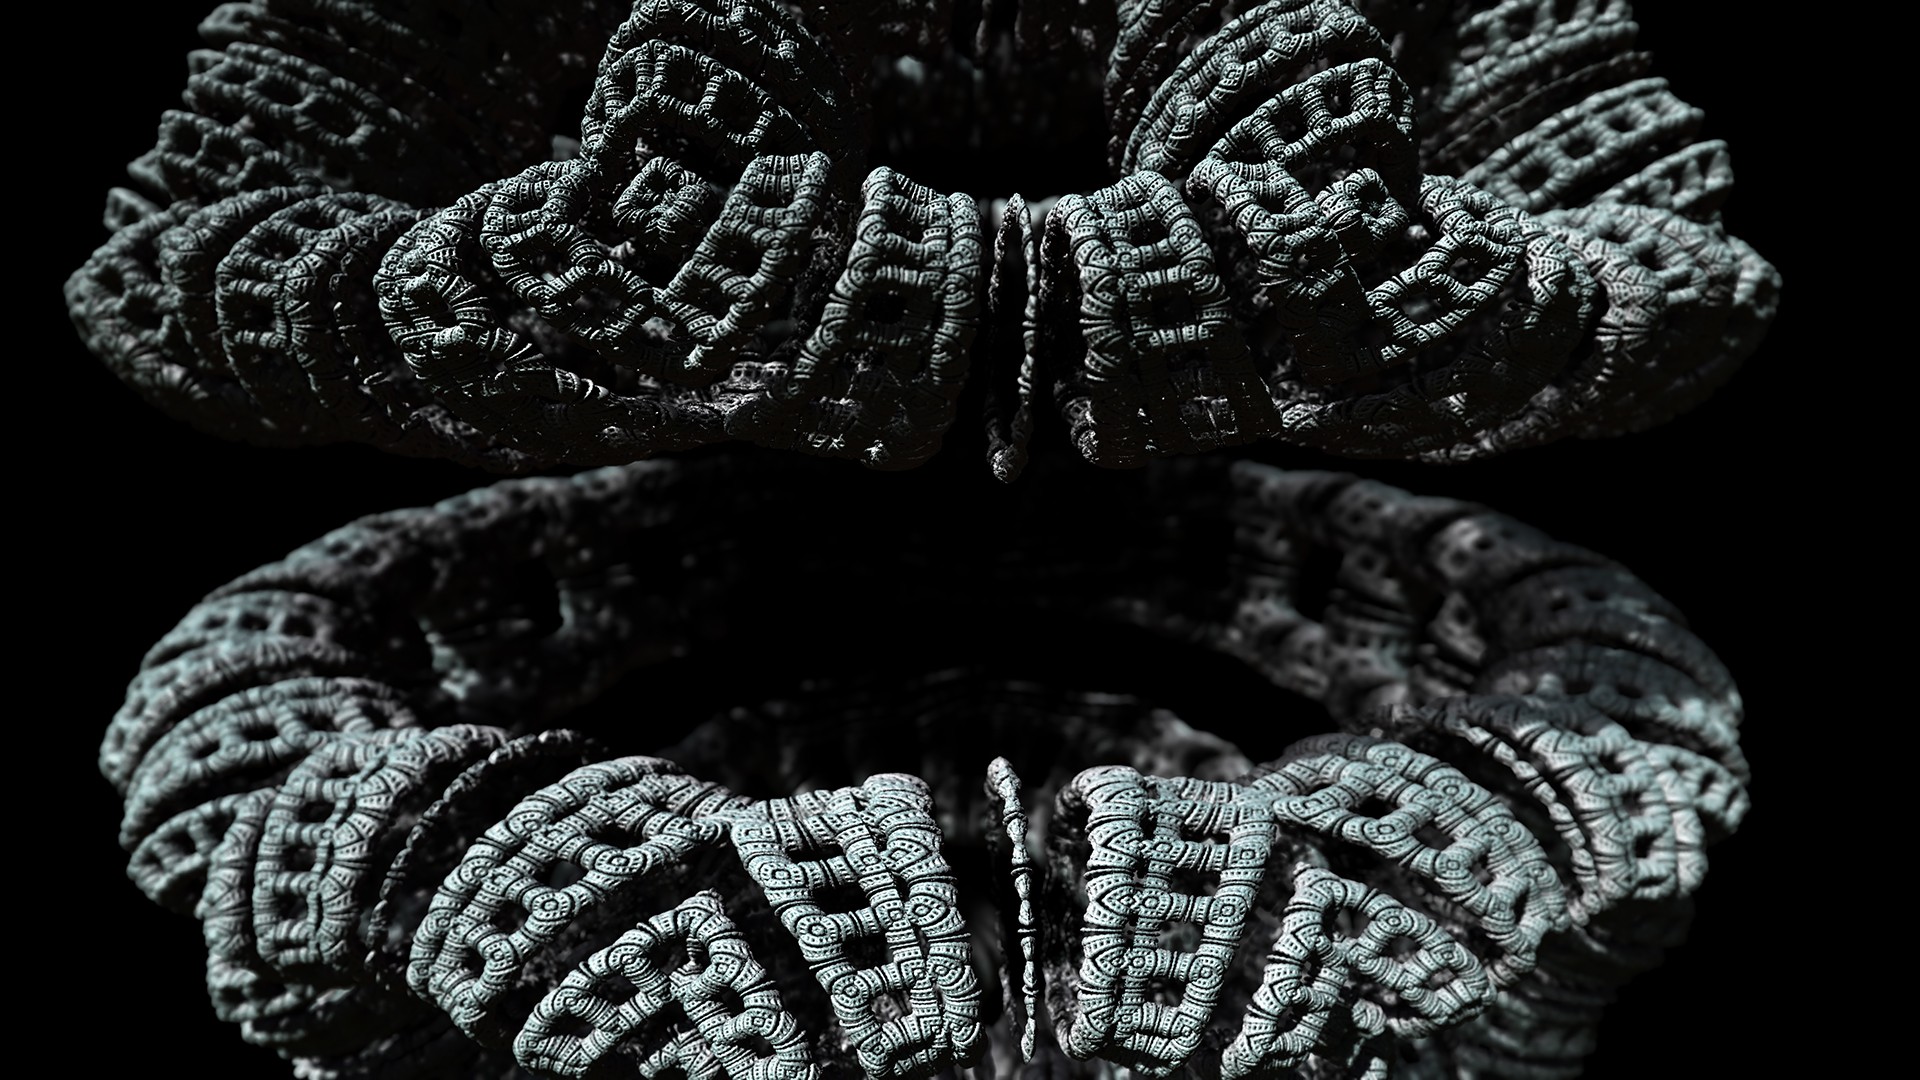 General 1920x1080 3D fractal minimalism CGI black